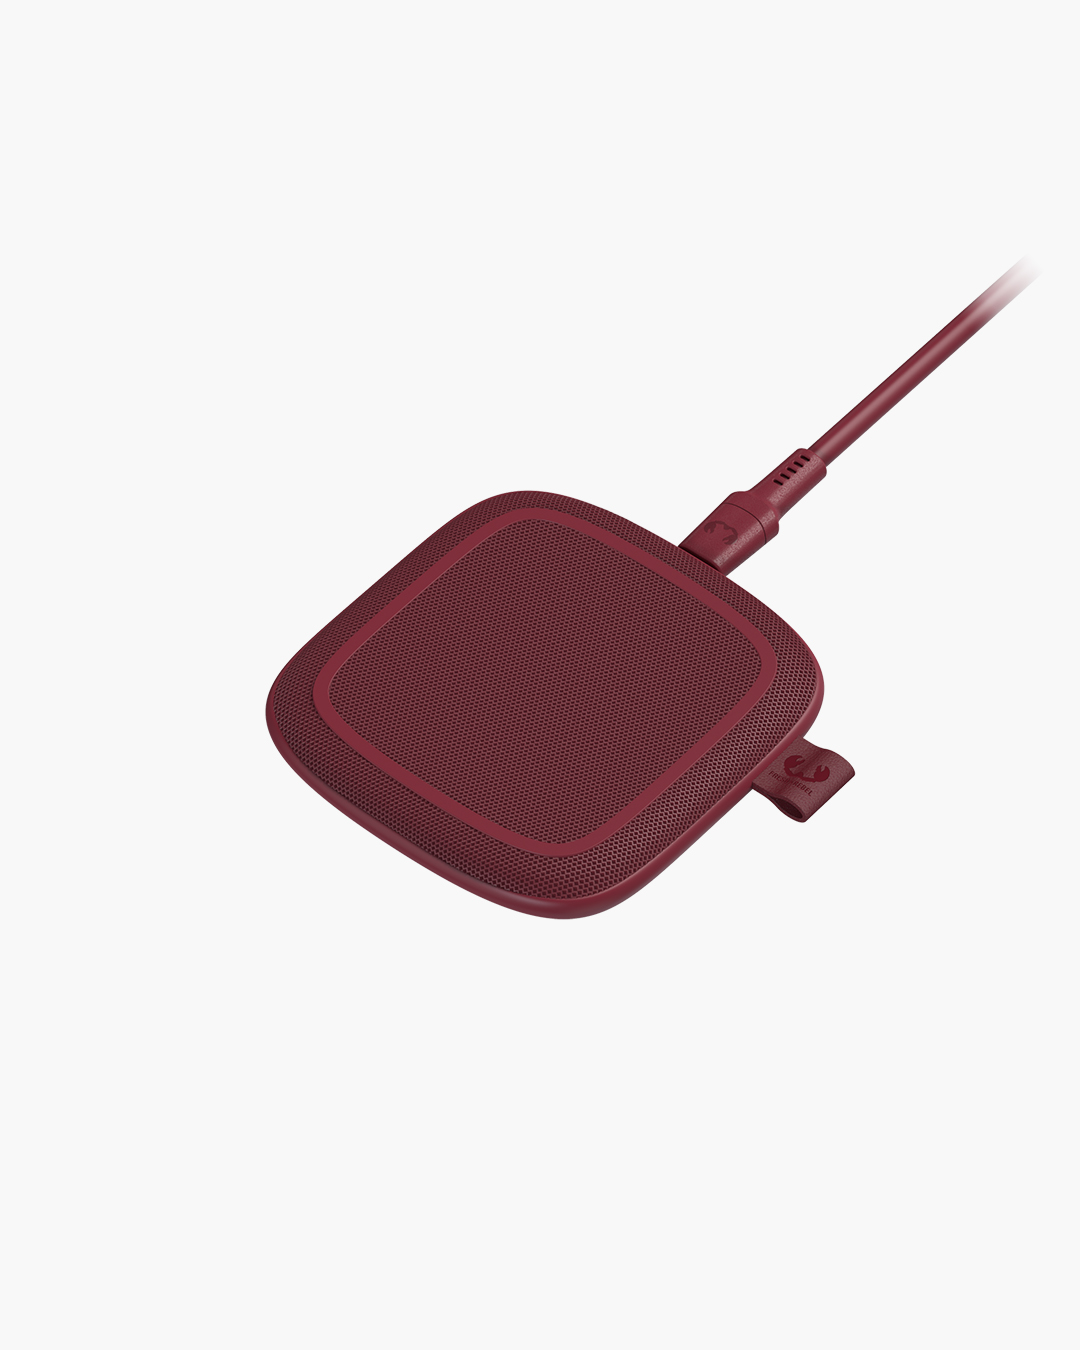 Fresh 'n Rebel - Base - 10W Wireless Charging Pad - Ruby Red